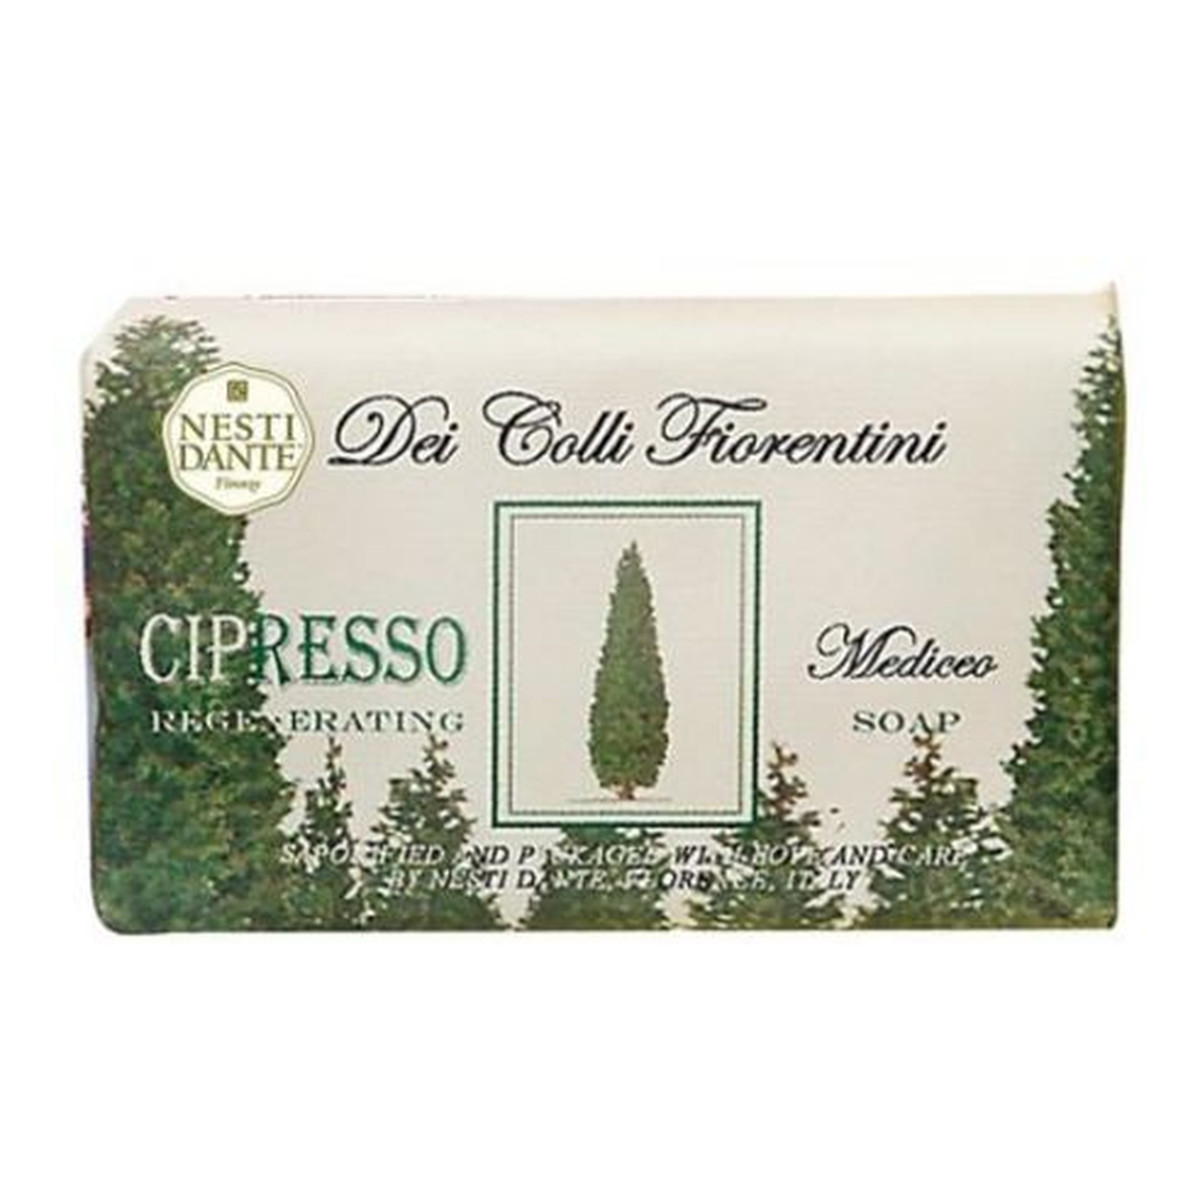 Nesti Dante Dei Colli Fiorentini Cipresso Regenerating Mydło toaletowe 250g